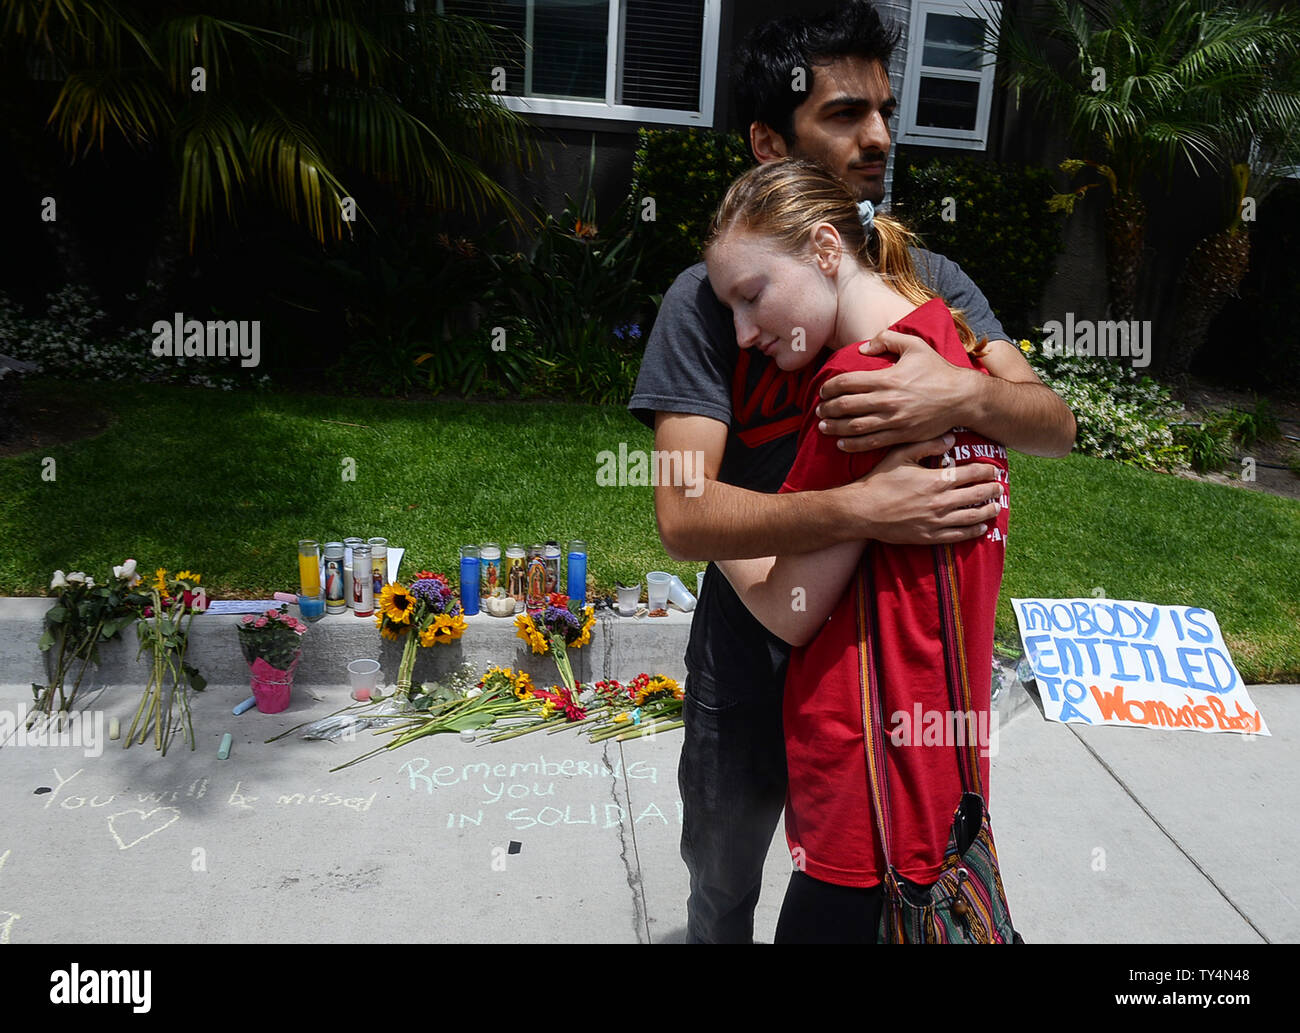 Ein paar außerhalb der Apartment Komplex in Isla Vista, Kalifornien am Mai 26, 2014 wo Elliot O. Rodger lebte und wo sein Rampage begann am Freitag Abend mit dem tödlichen stabbings von drei Personen. UPI/Jim Ruymen Stockfoto